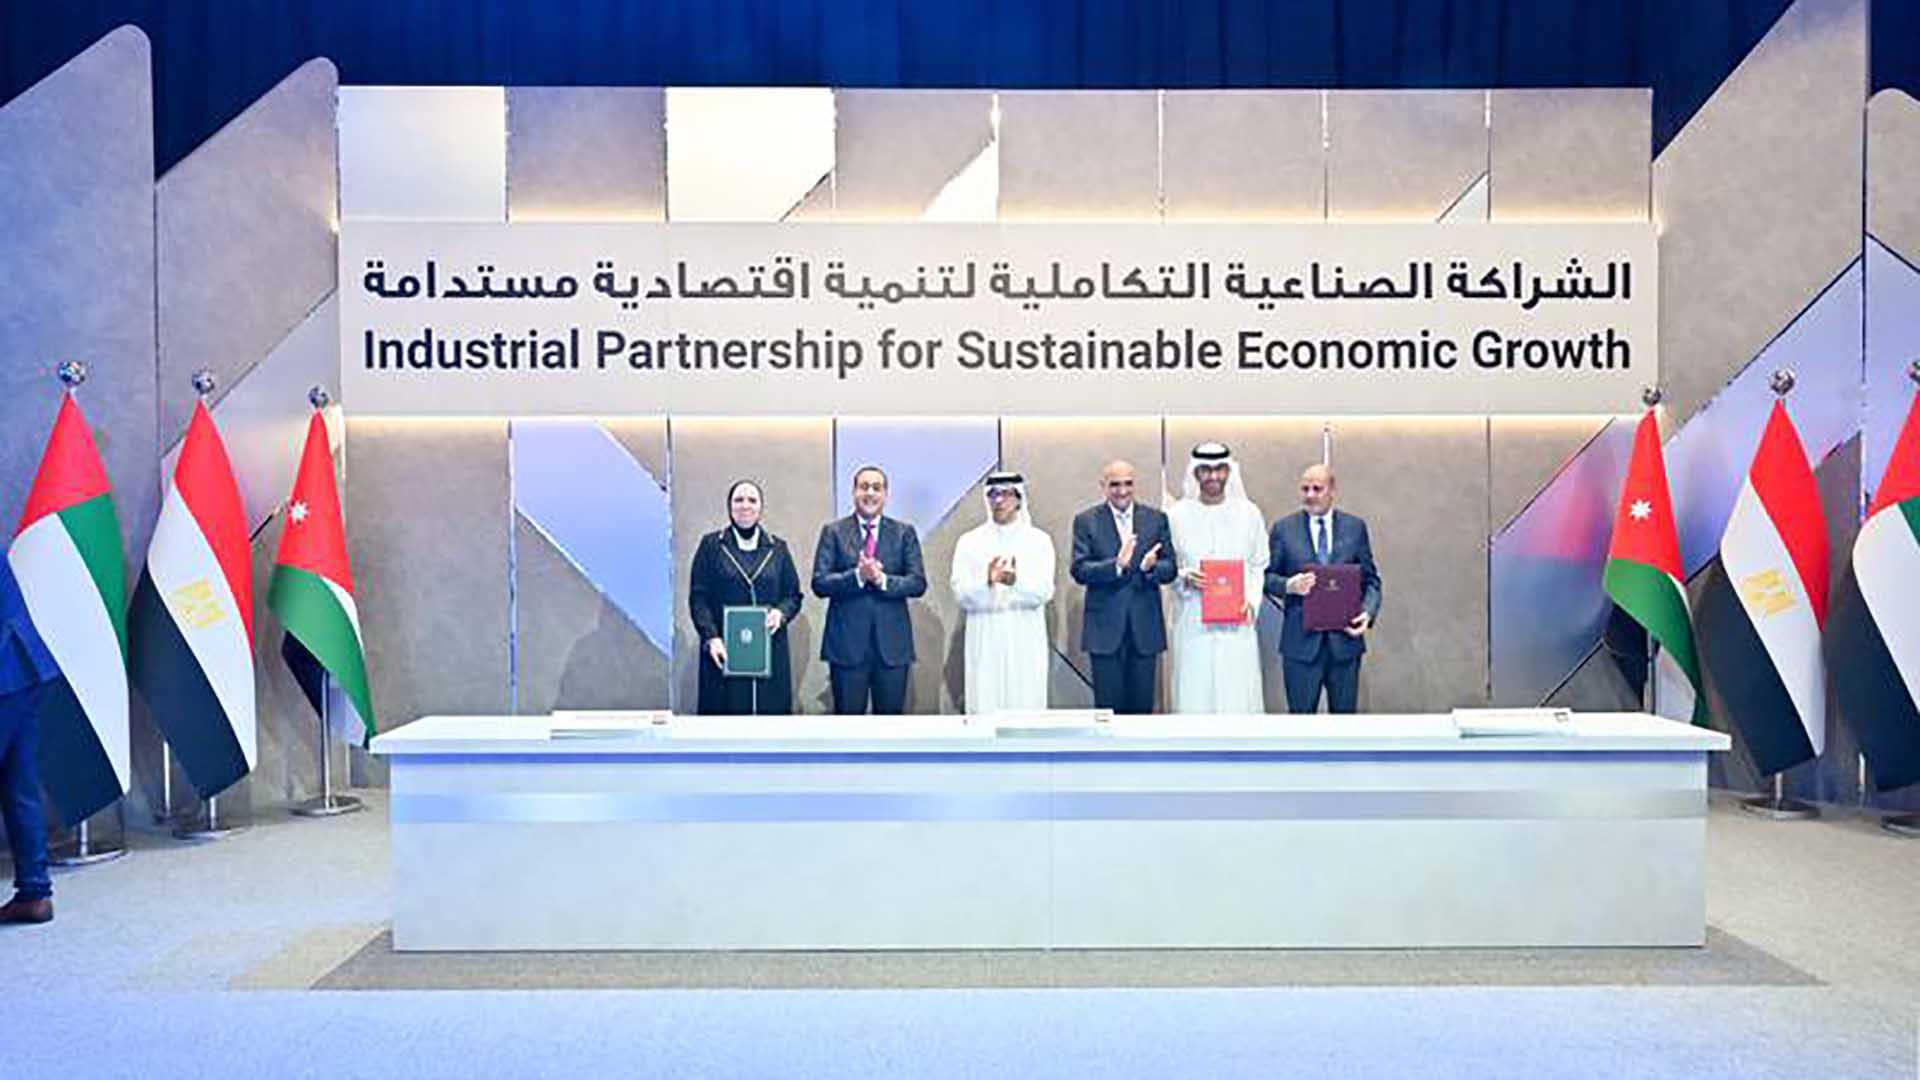 UAE, Ai Cập và Jordan đã ký kết quan hệ đối tác công nghiệp để thúc đẩy tăng trưởng kinh tế bền vững và tìm kiếm cơ hội đầu tư chung trong các lĩnh vực ưu tiên. (Nguồn: The National)